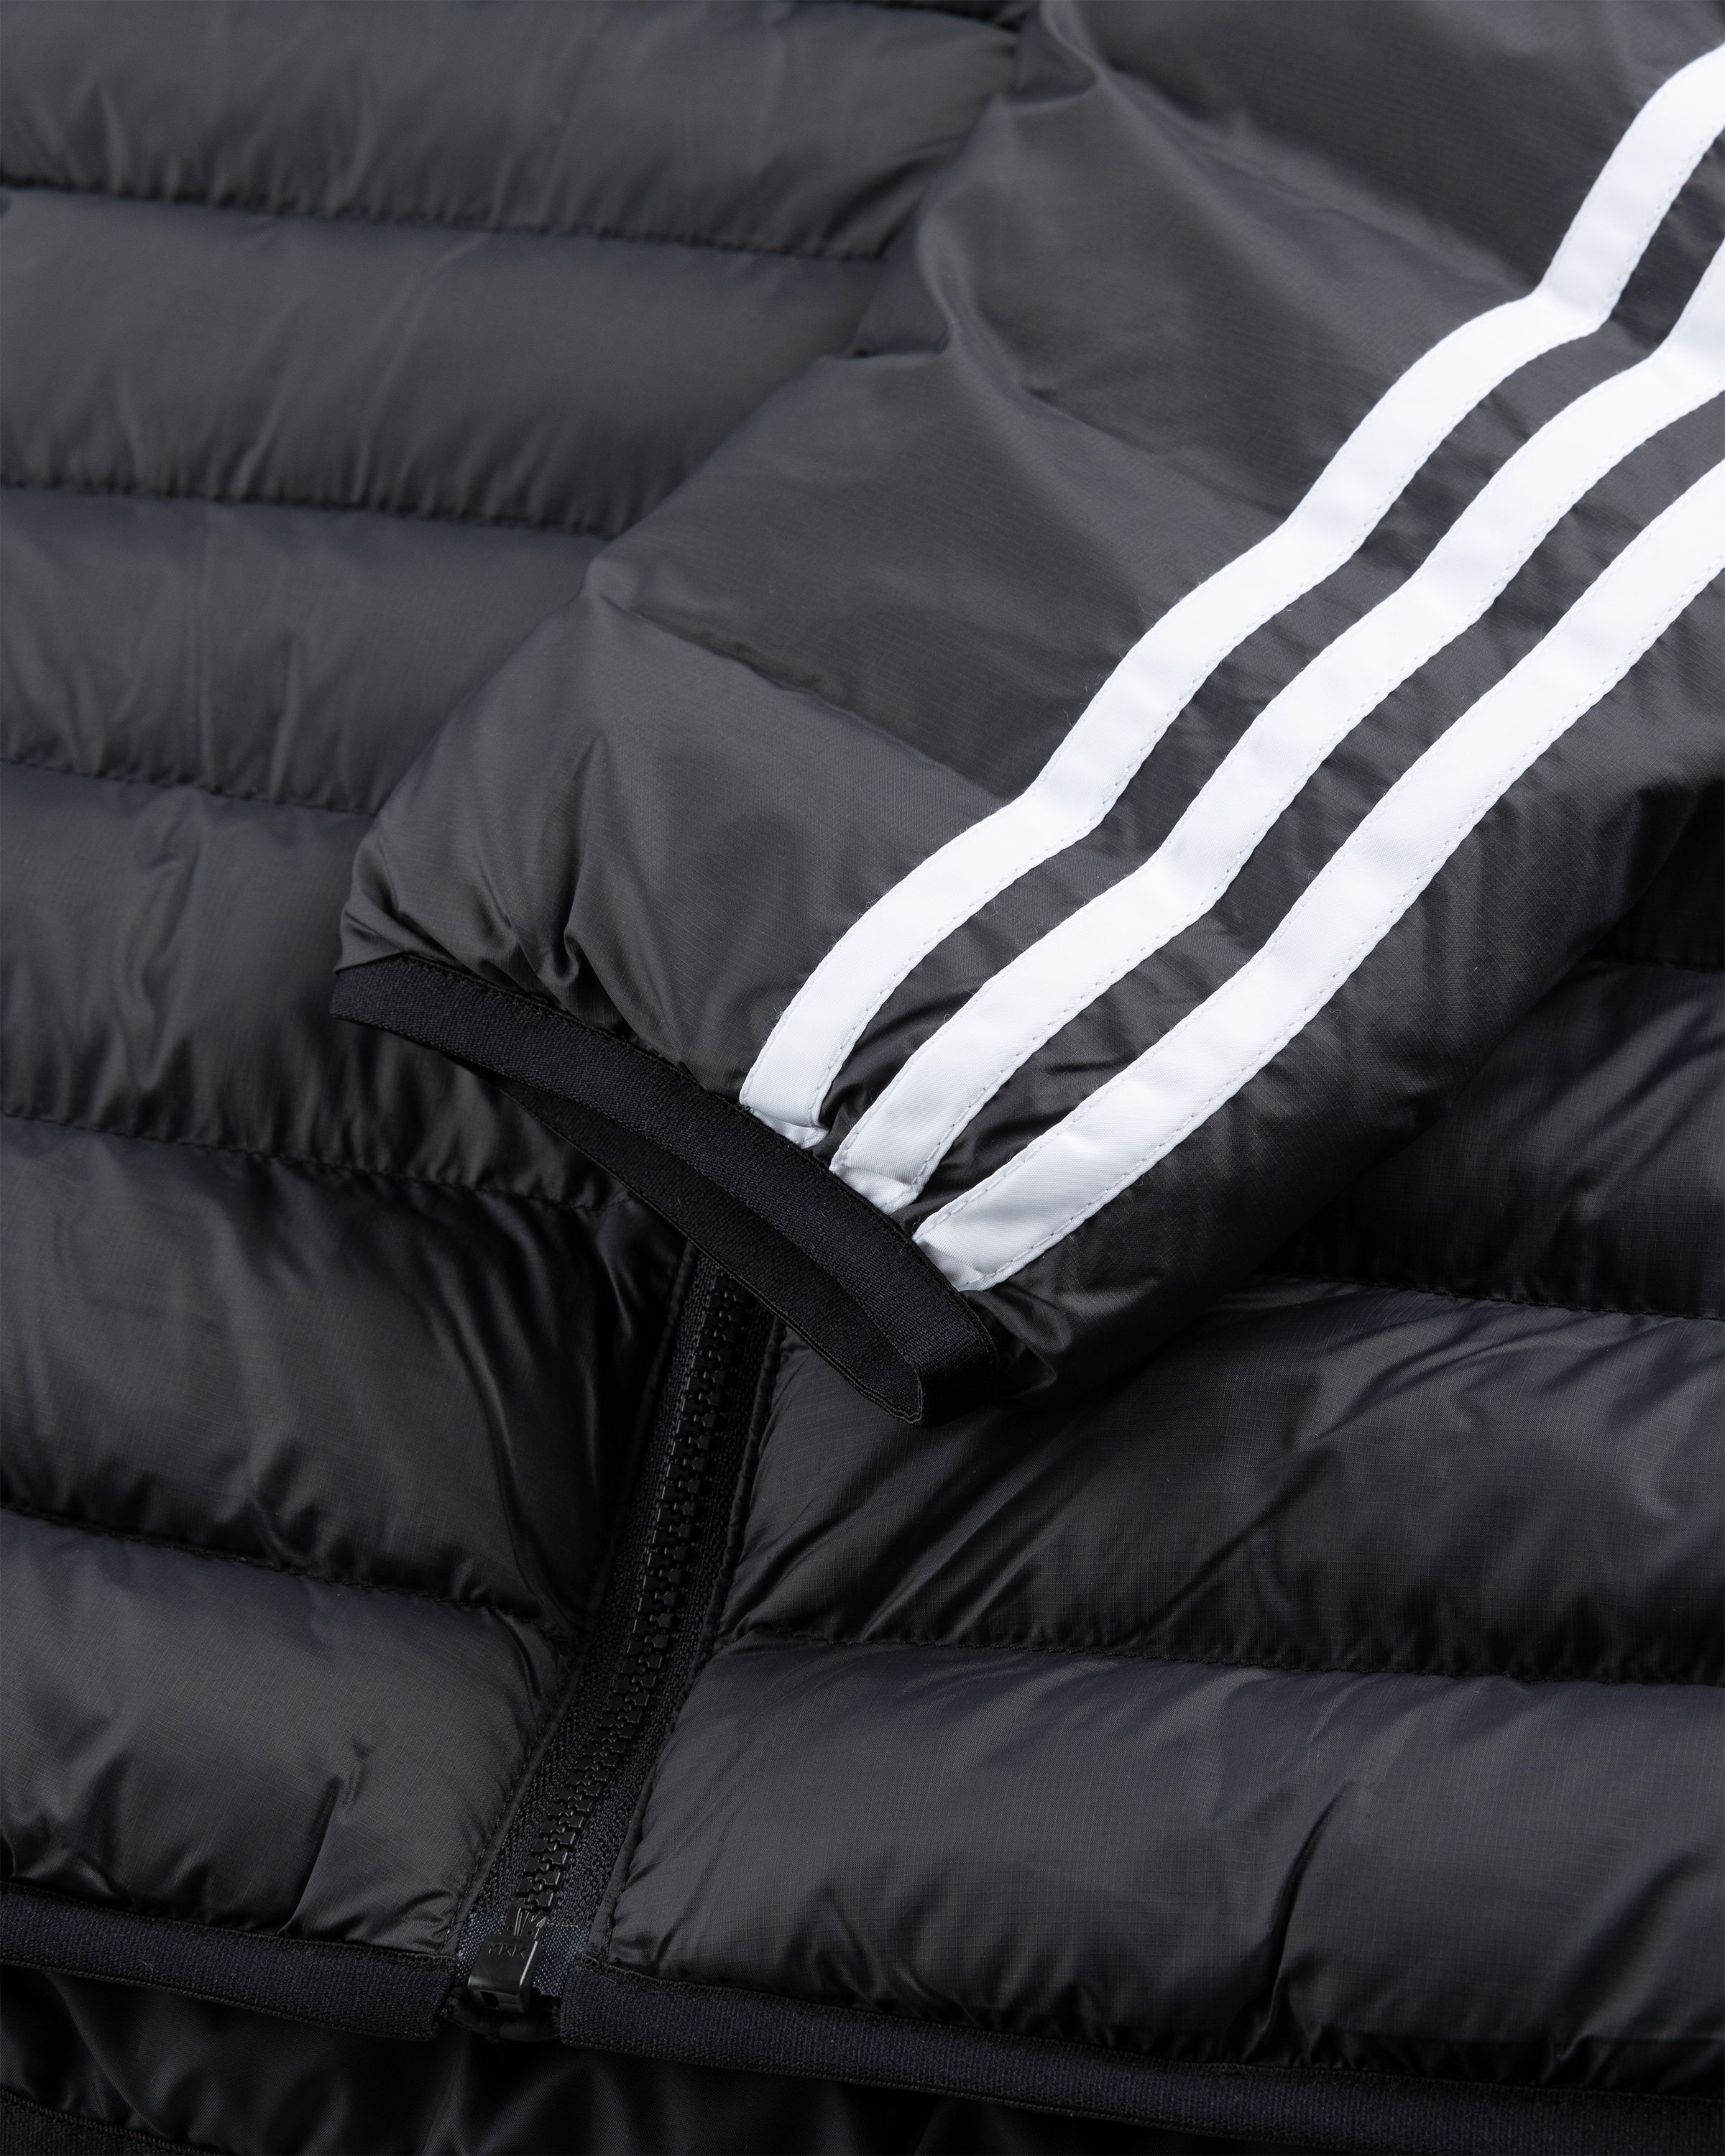 Adidas - Padded Jacket Black - Clothing - Black - Image 6